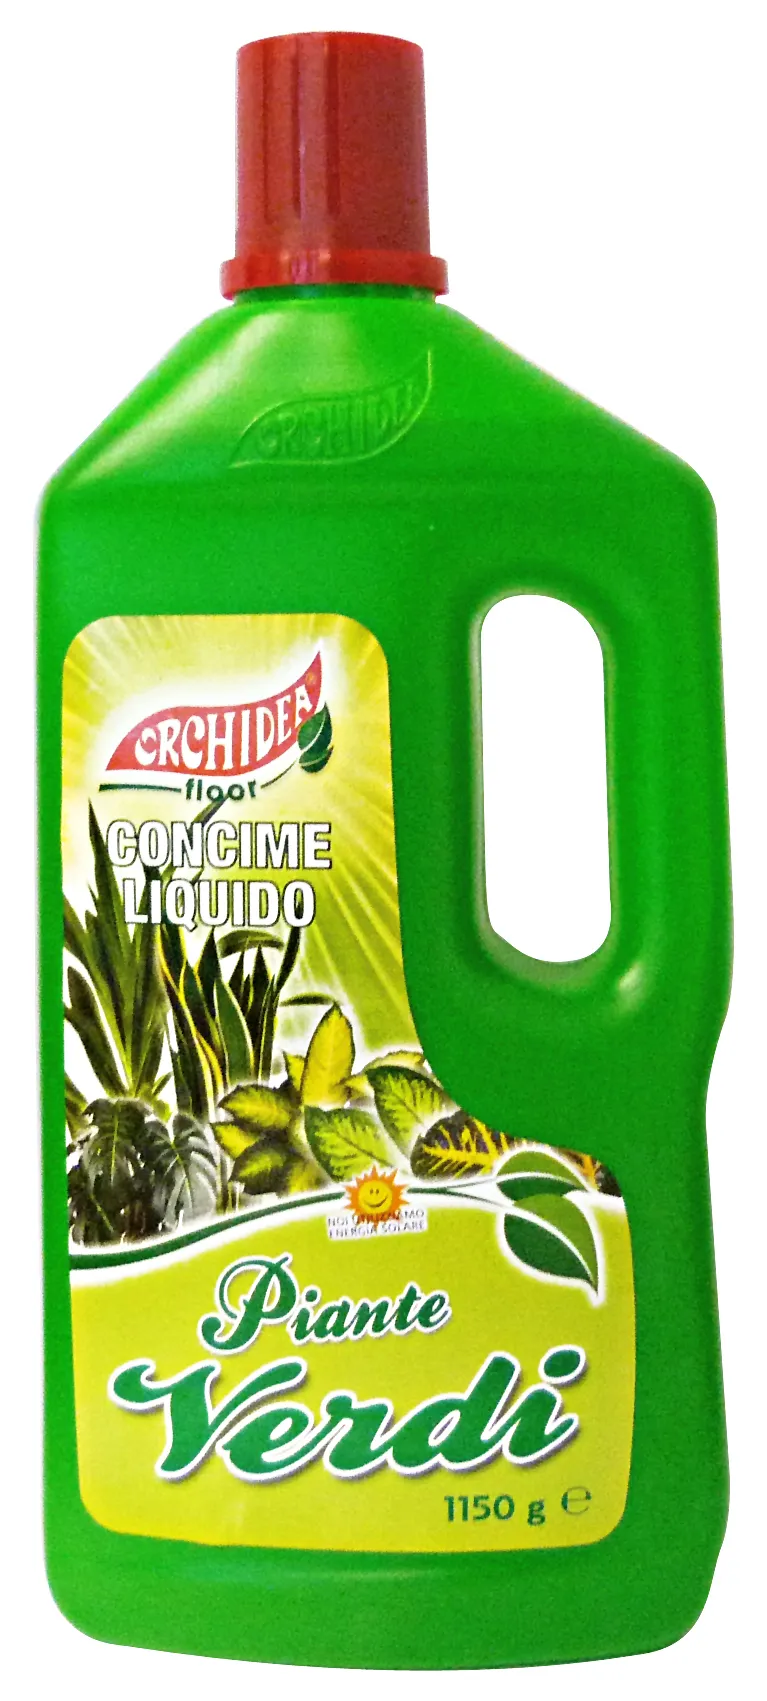 "ORCHIDEA Piante verdi liq.1150 gr. - Prodotto per piante"